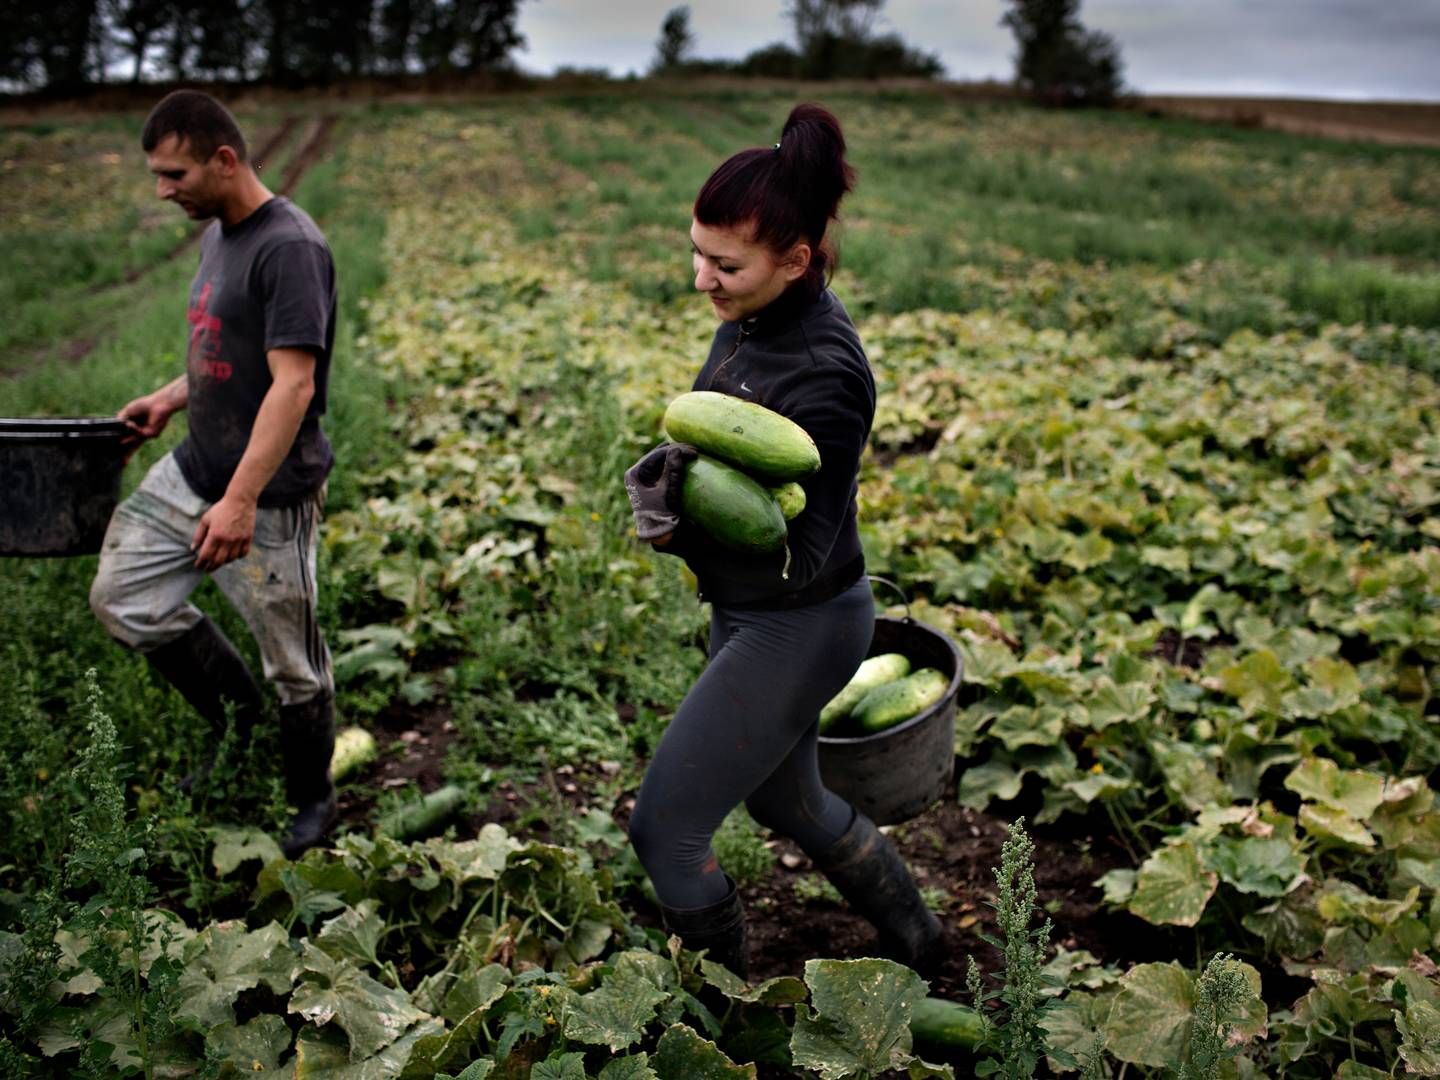 Ifølge analysen 44 pct. af medarbejdere i landbruget udenlandsk baggrund, mens 66,4 pct. af sektorens lønmodtagere i laveste lønkvartil har udenlandsk baggrund. | Foto: Martin Lehmann